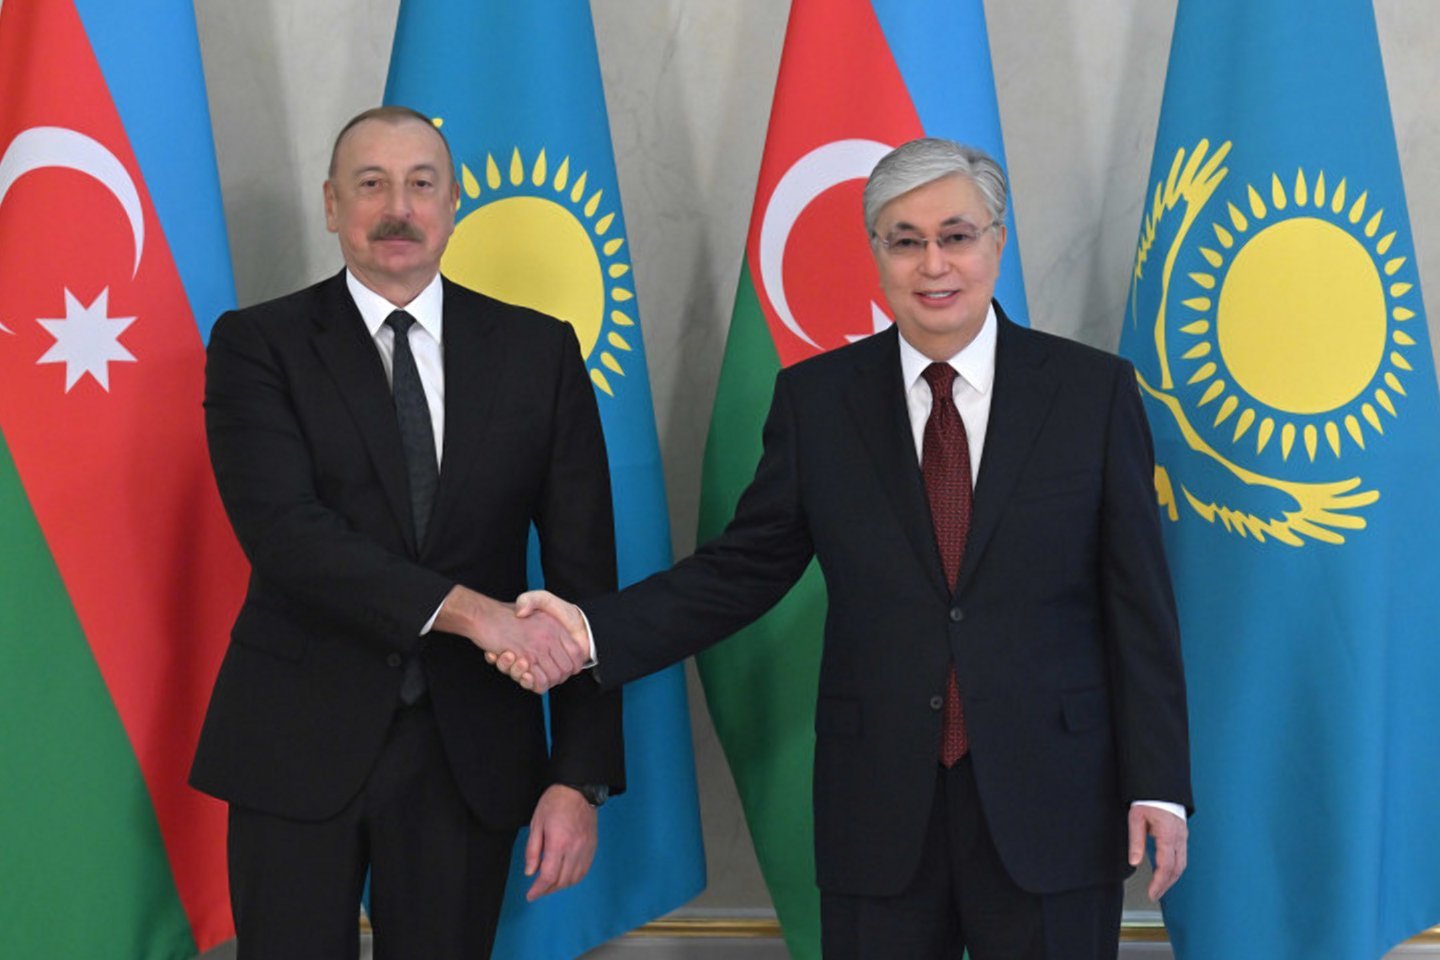 Новости Казахстана / Политика в Казахстане / Казахстан и Азербайджан планируют ряд совместных проектов - Касым-Жомарт Токаев